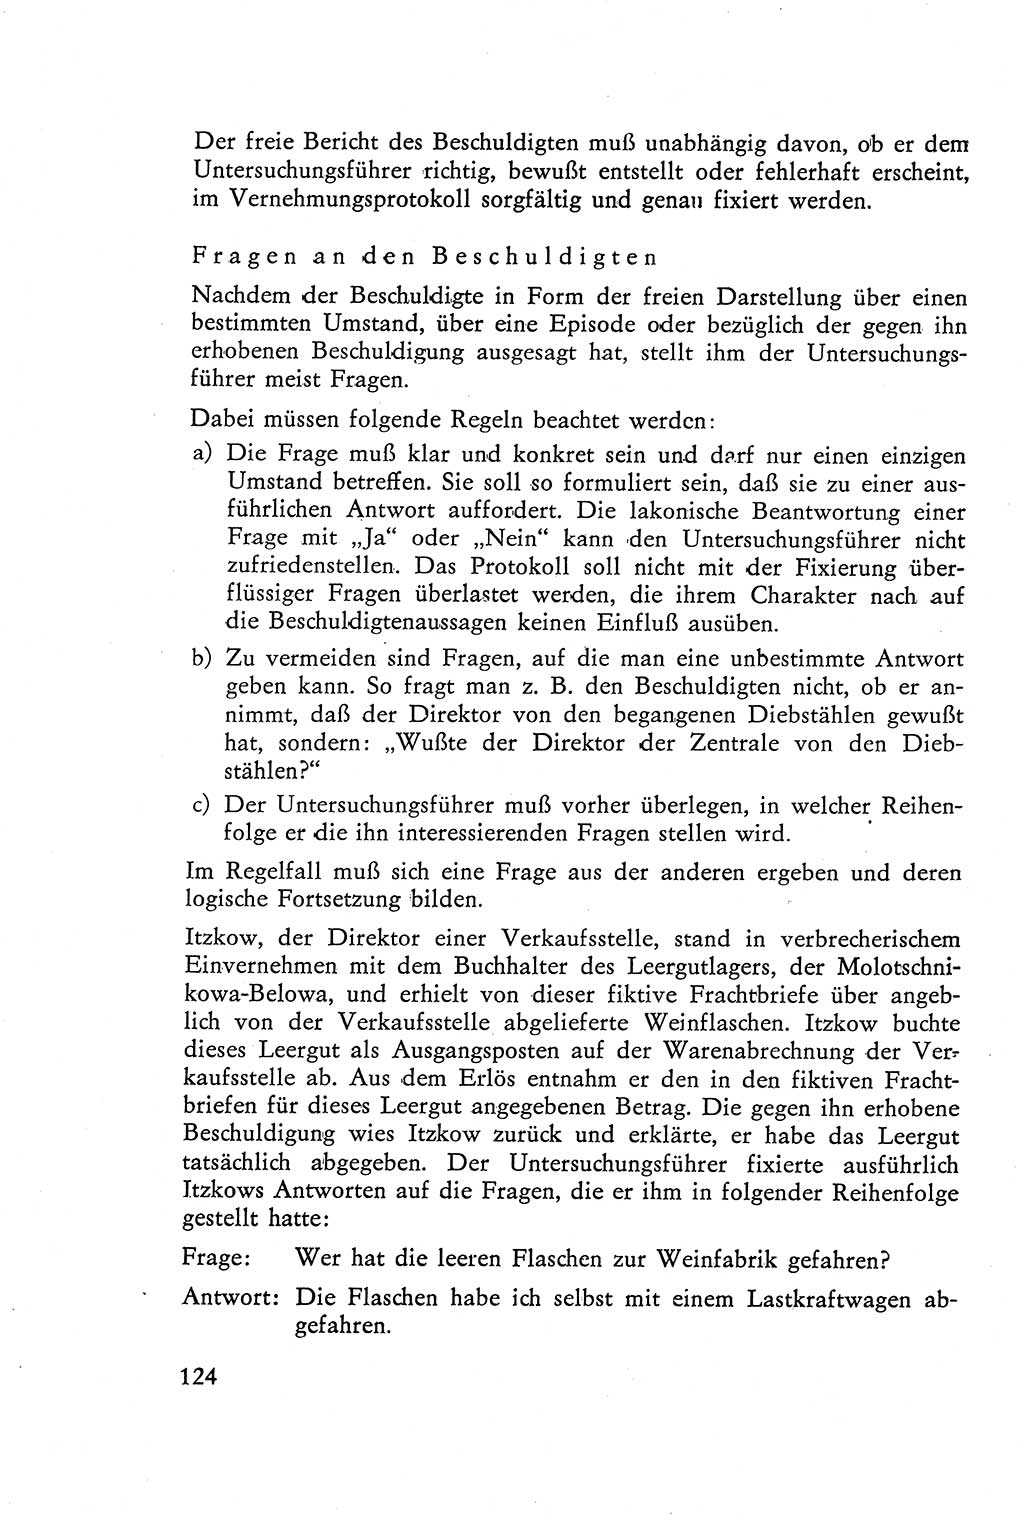 Die Vernehmung [Deutsche Demokratische Republik (DDR)] 1960, Seite 124 (Vern. DDR 1960, S. 124)